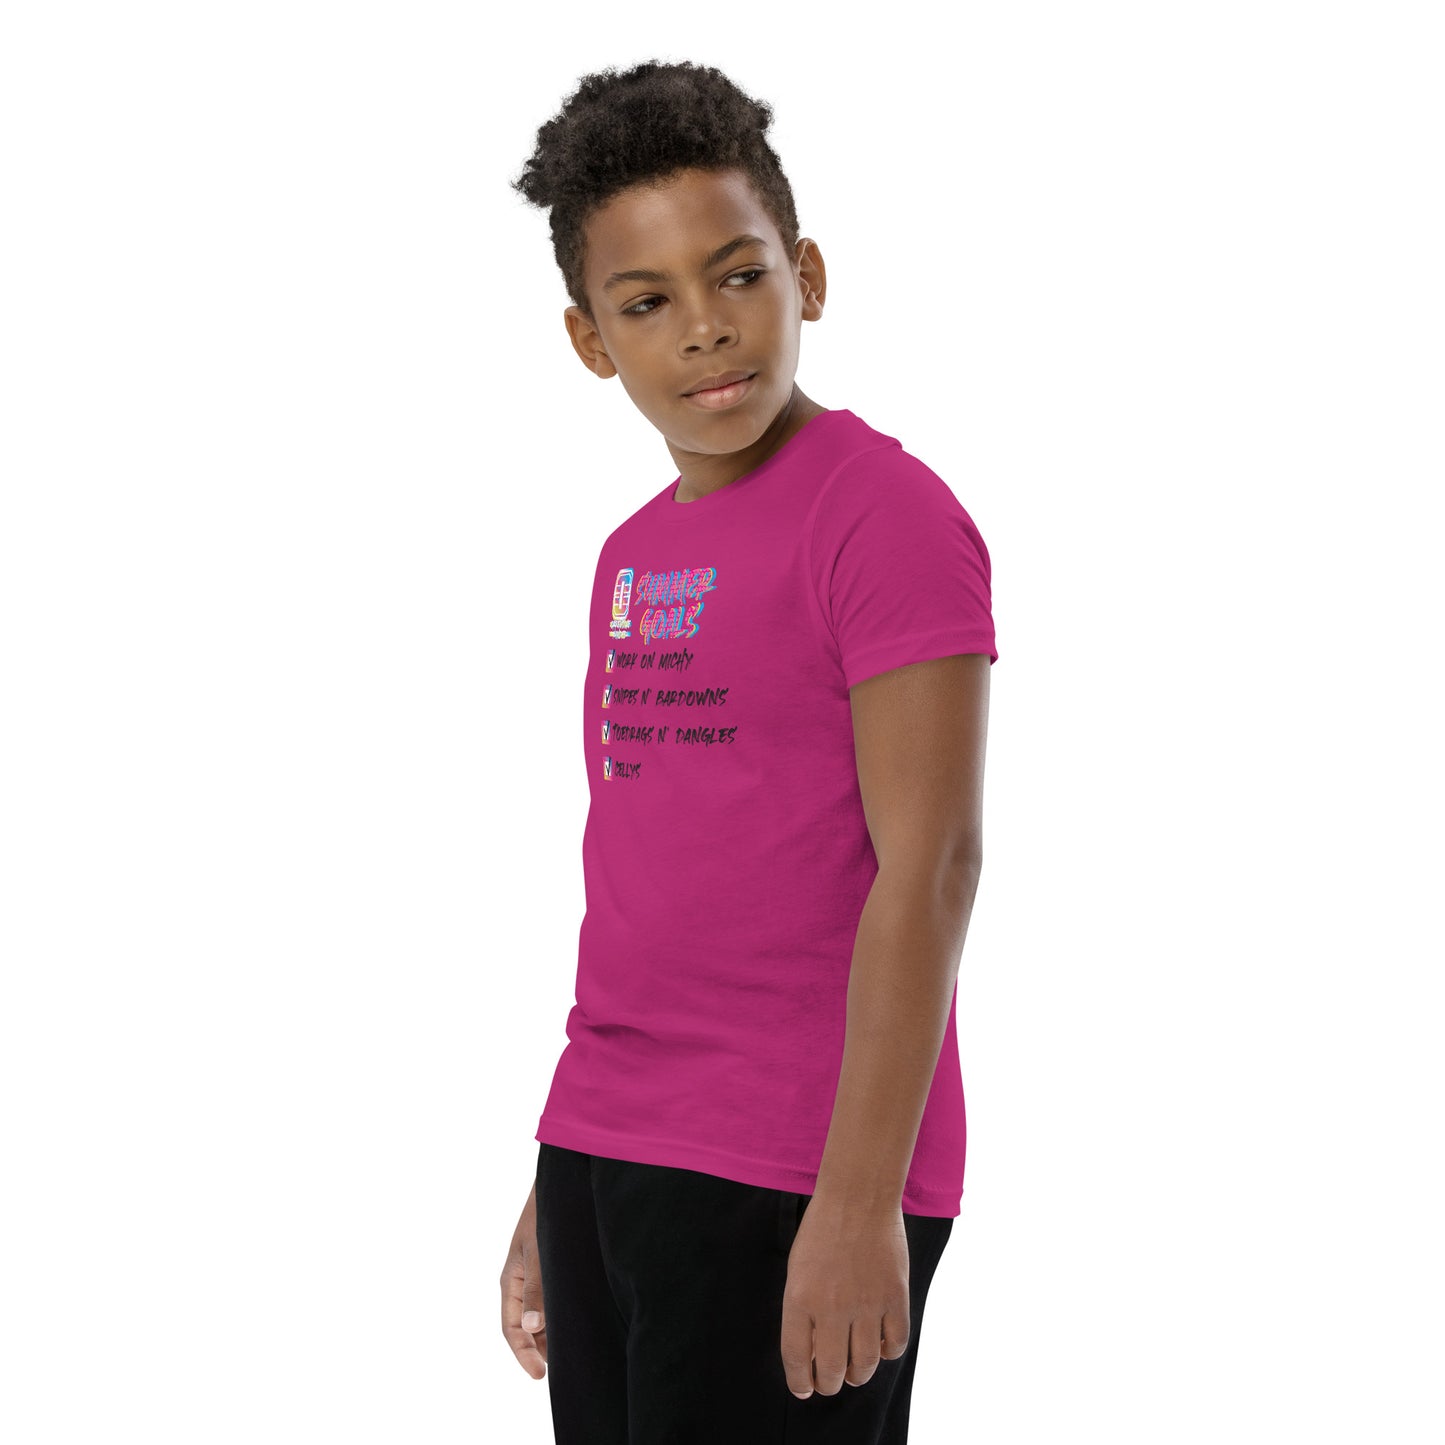 OM Hype Summer Goals Pink Youth Short Sleeve T-Shirt